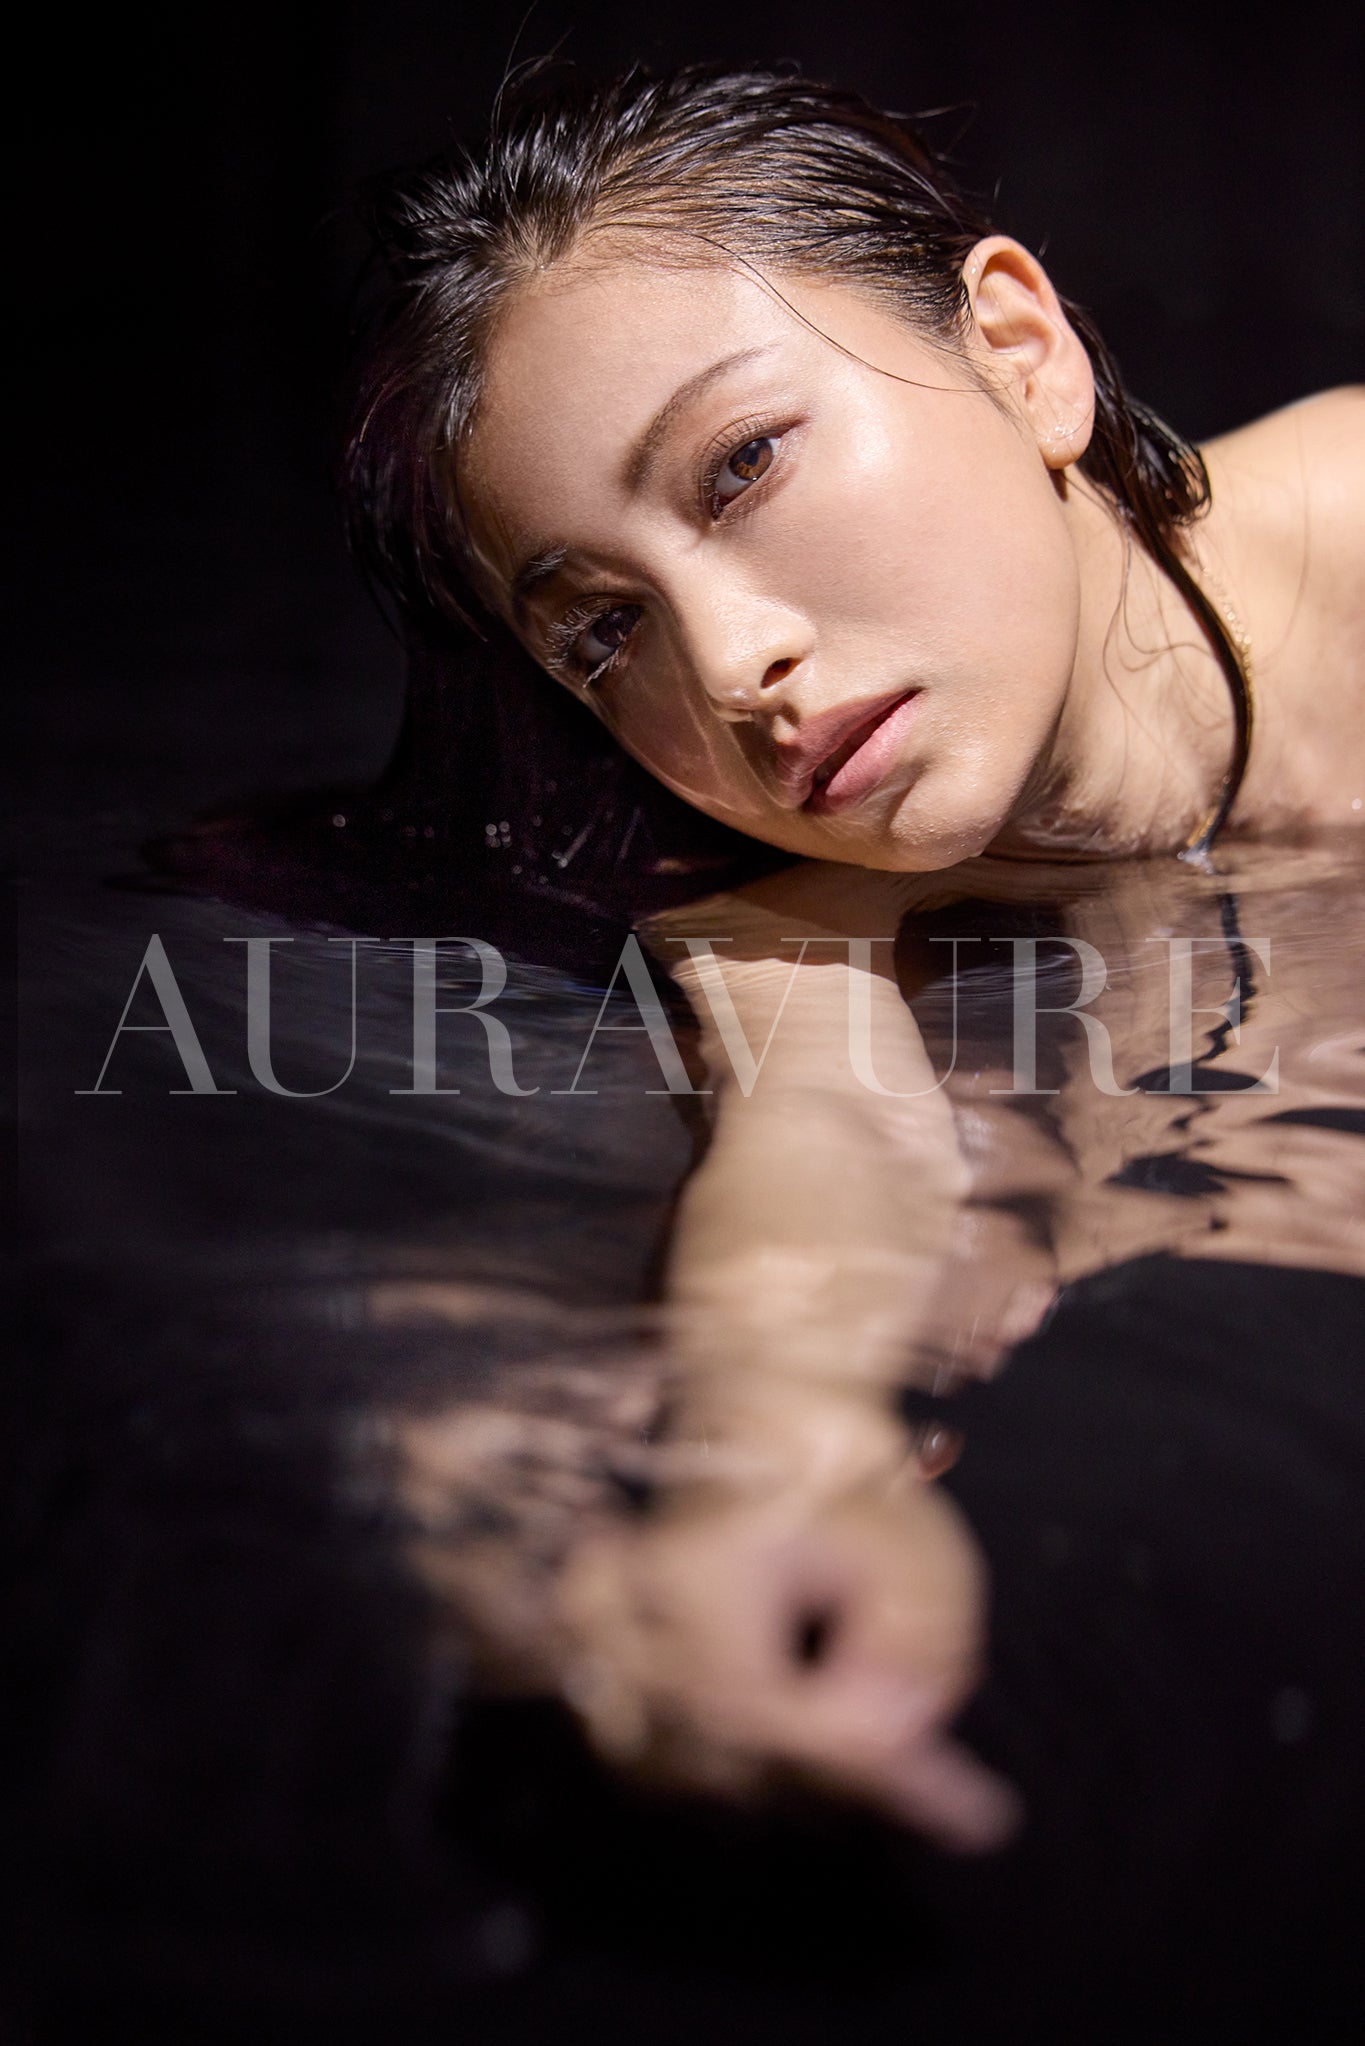 Auravure vol.02. Suzuki Takara - Hanya Album Foto Digital